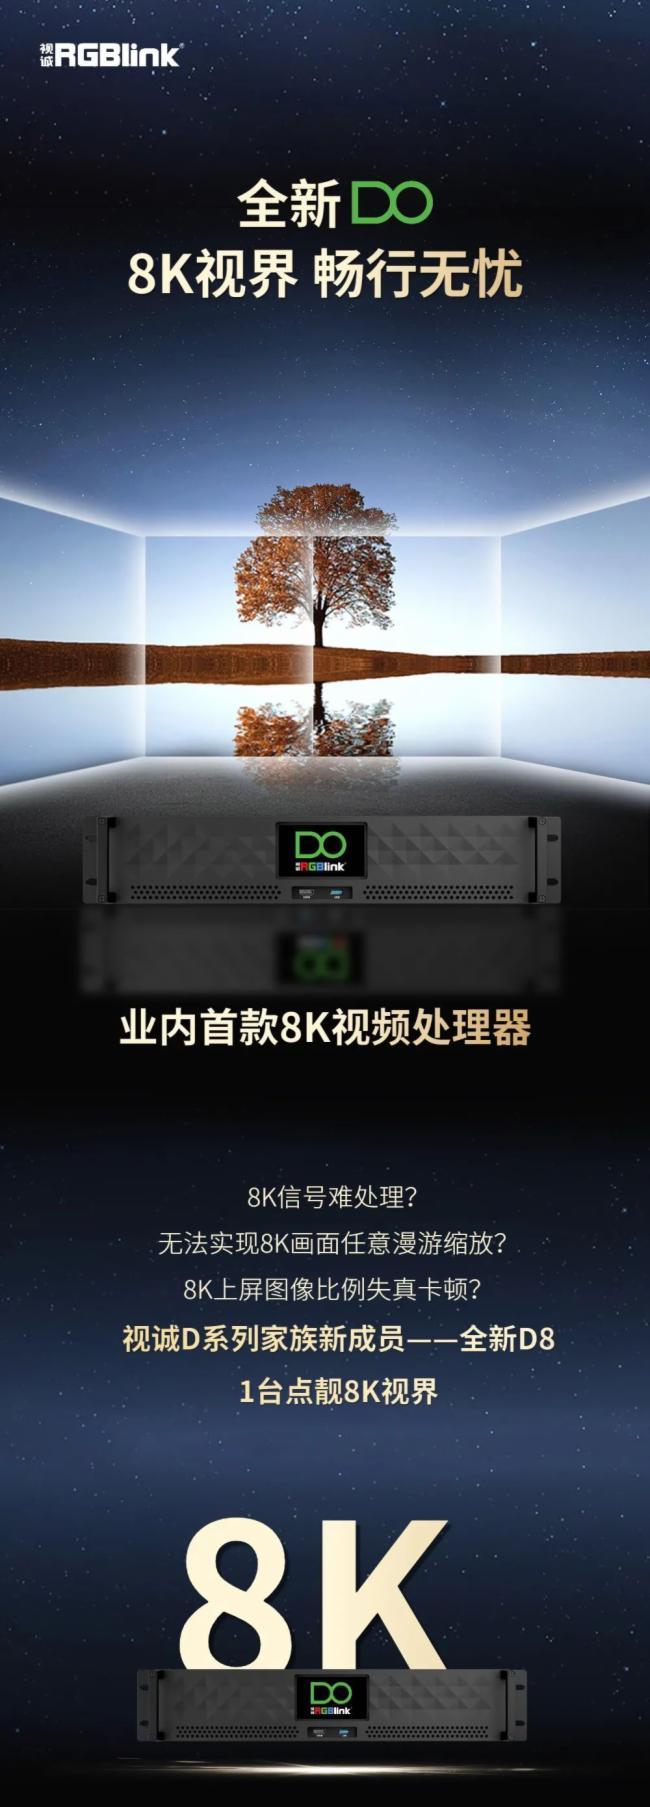 业内首款8K视频处理器重磅来袭!RGBlink视诚科技D系列家族新成员一一全新D8 1台点靓8K视界